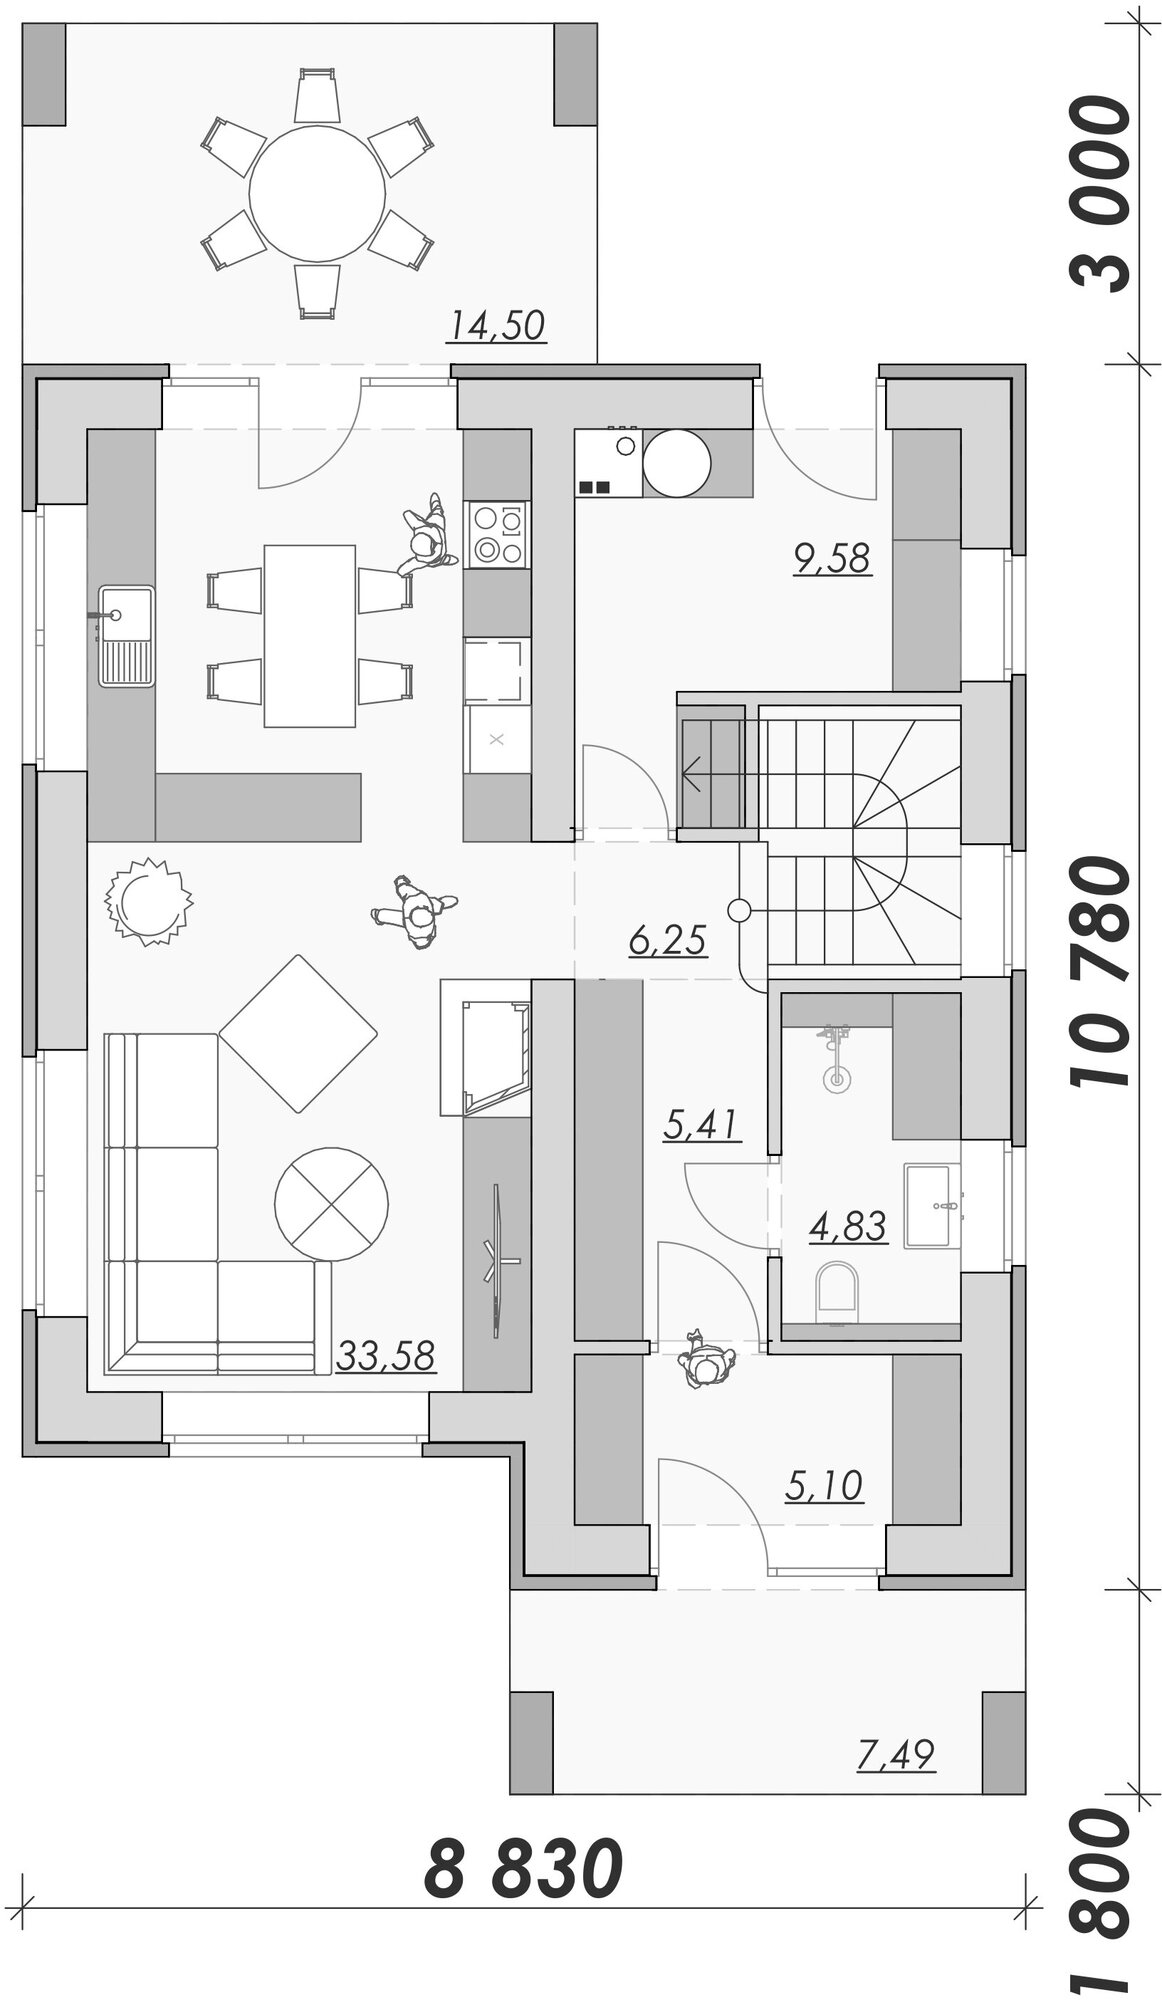 Проект двухэтажного дома в стиле Райта 135 м2 с 3 спальнями, общей зоной кухни с гостиной, отдельной котельной и террасой на заднем дворике